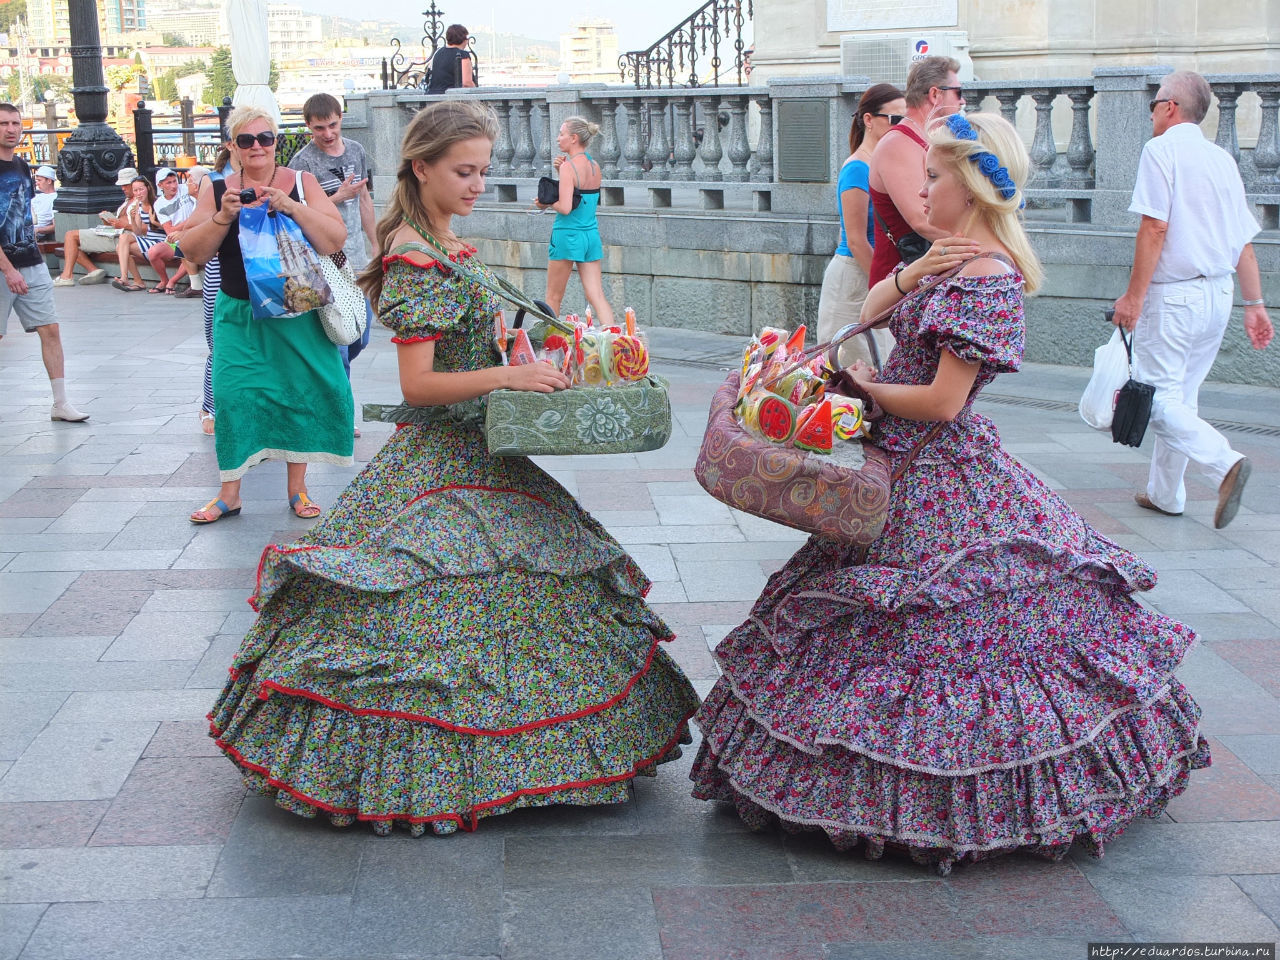 Вот на набережной две милые девушки торгуют сахарными пряниками и конфетами на палочке Ялта, Россия